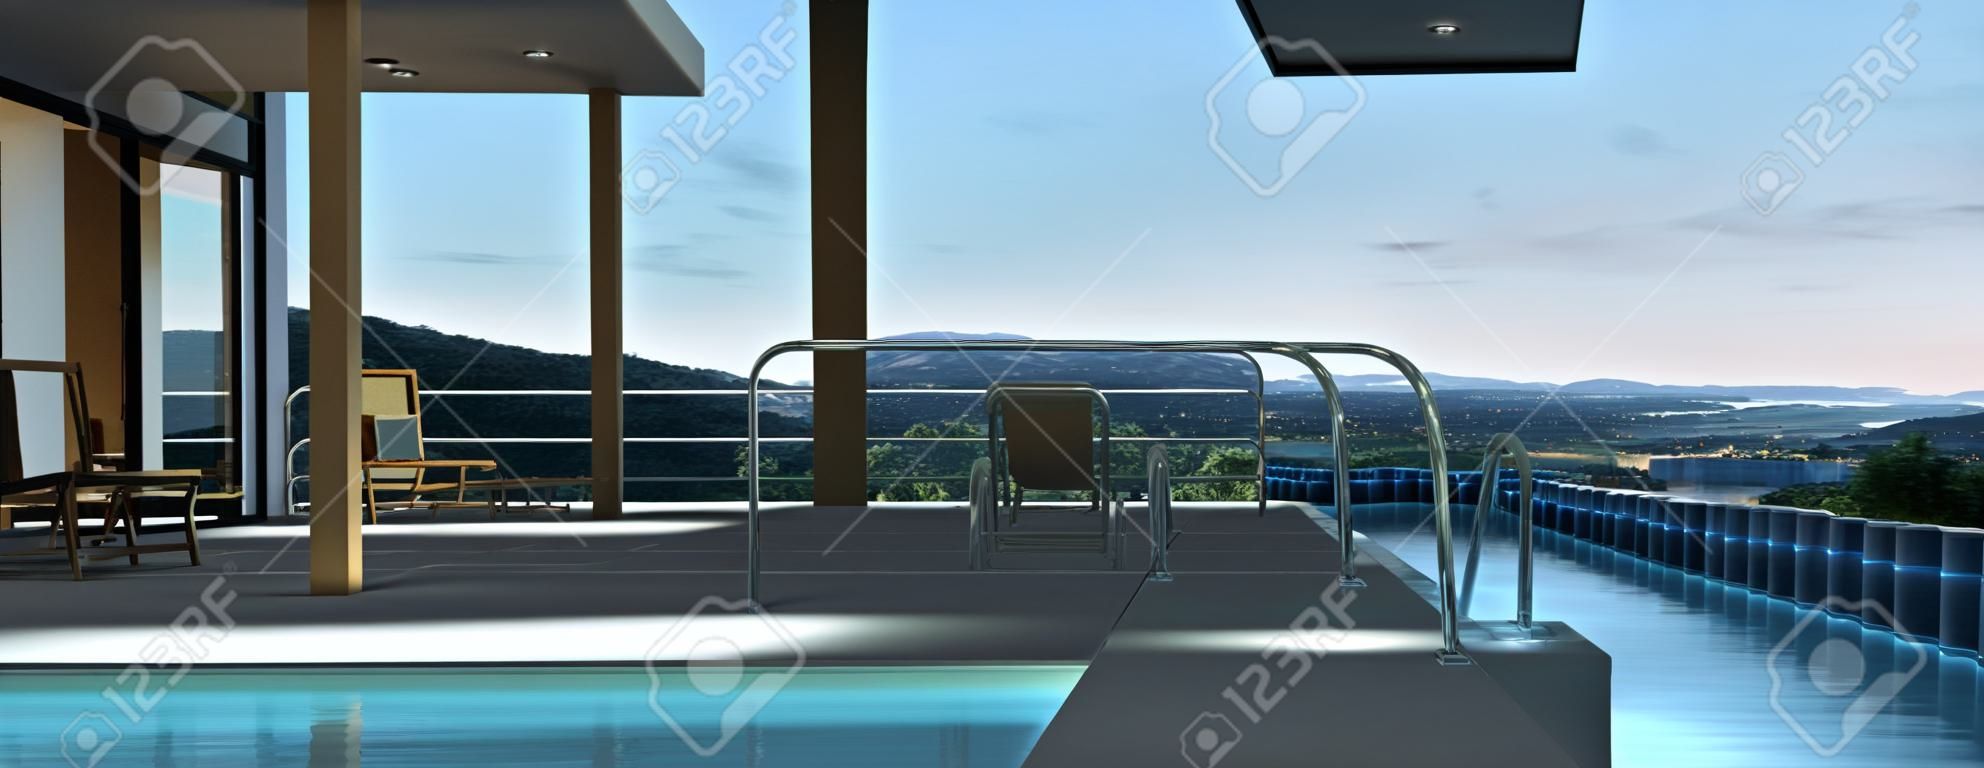 Casa moderna con piscina y hermosas vistas